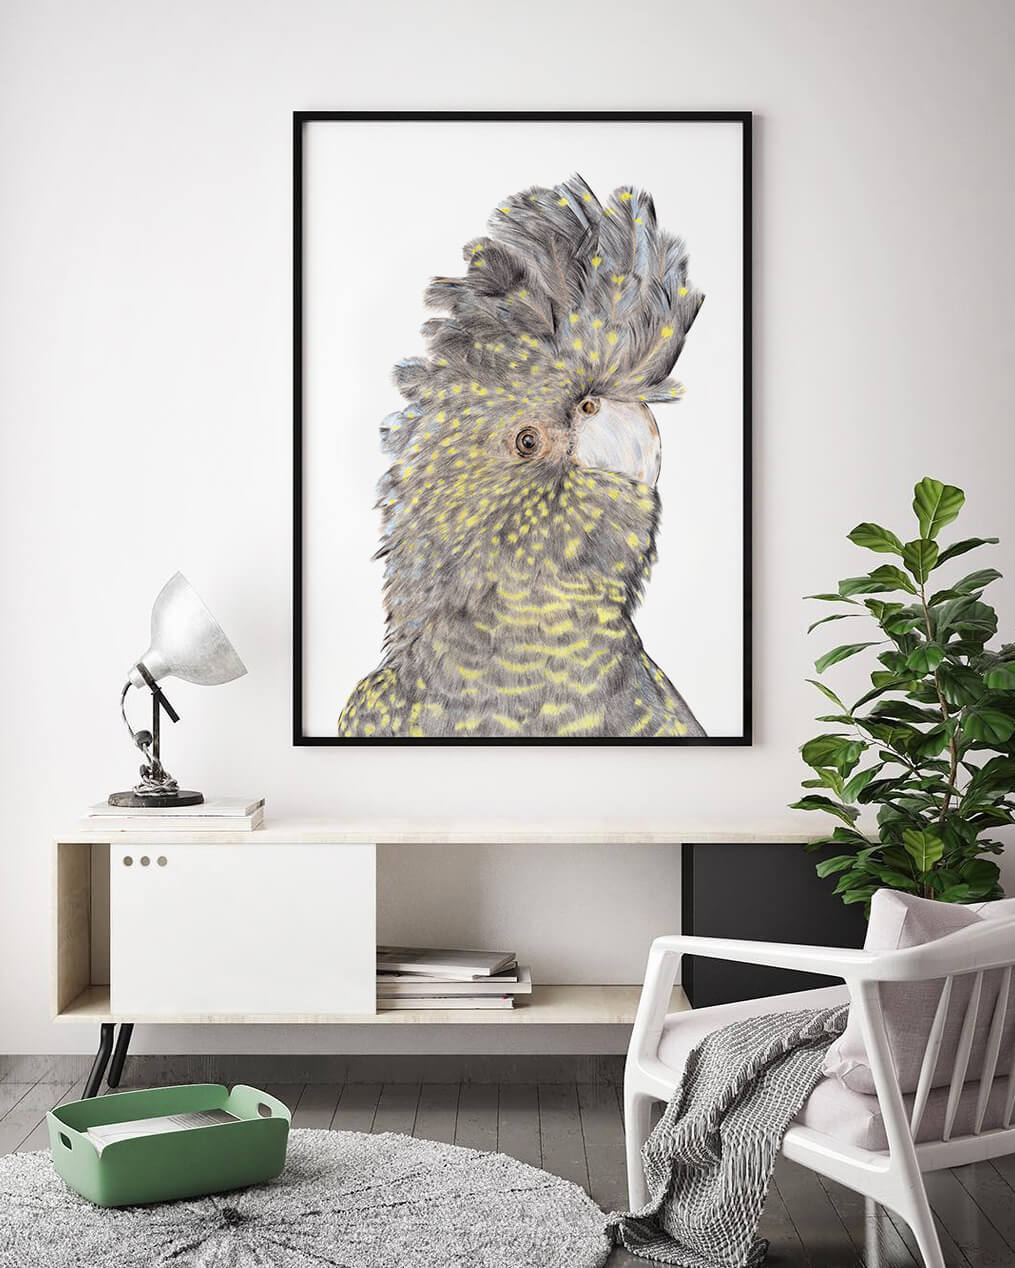 Framed art of iconic Australian Black Birds